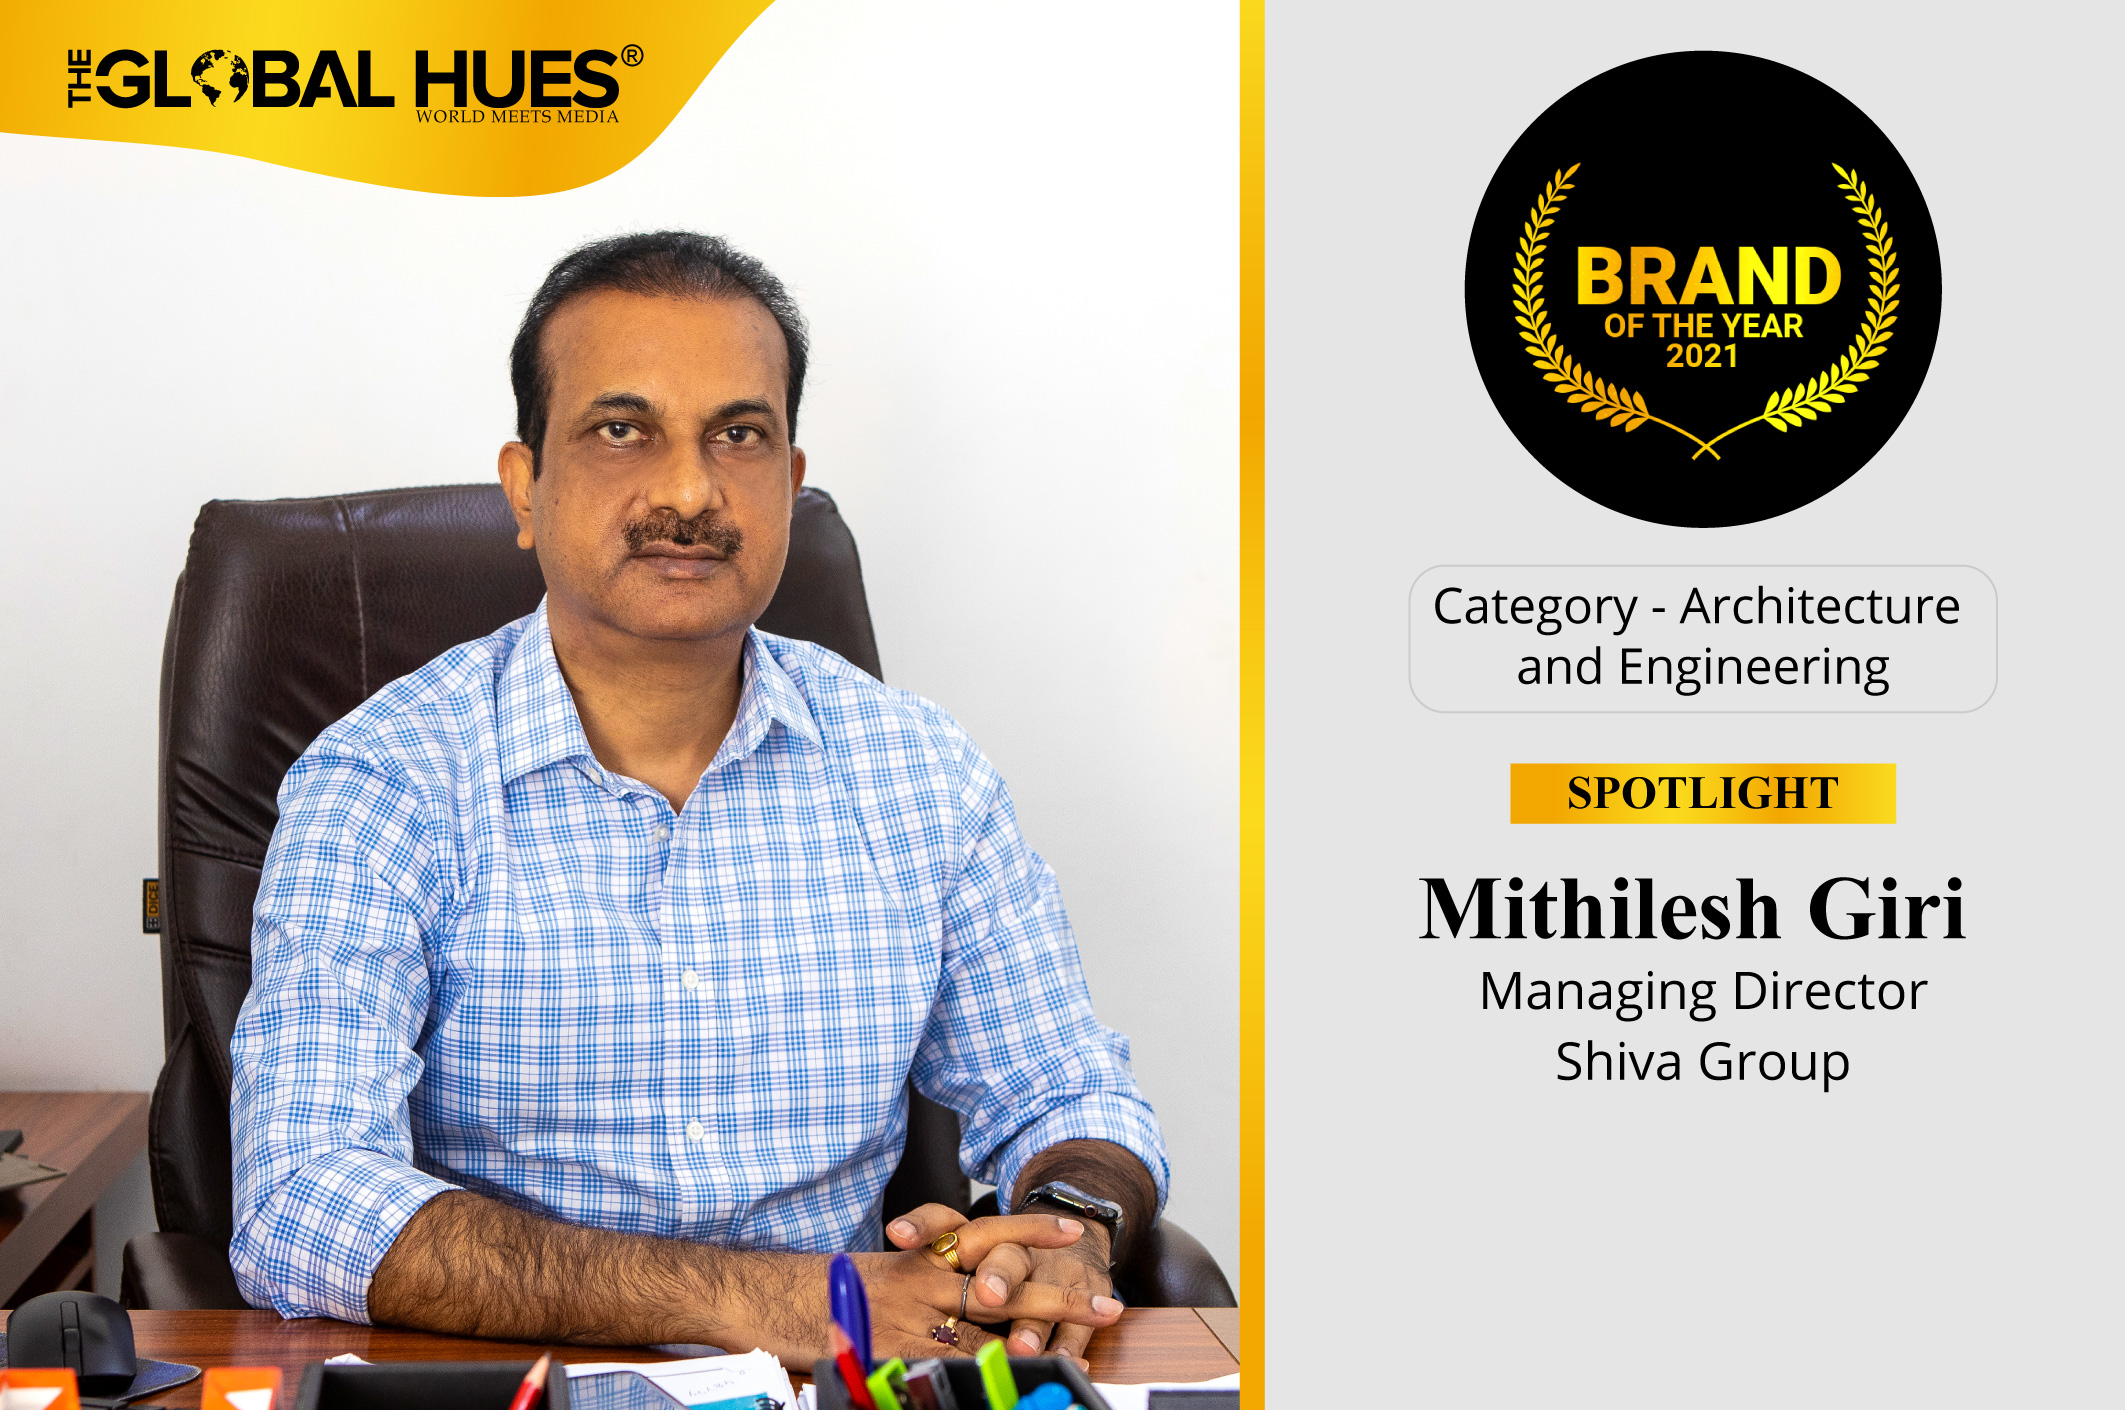 Mithilesh Giri Managing Director Shiva Group